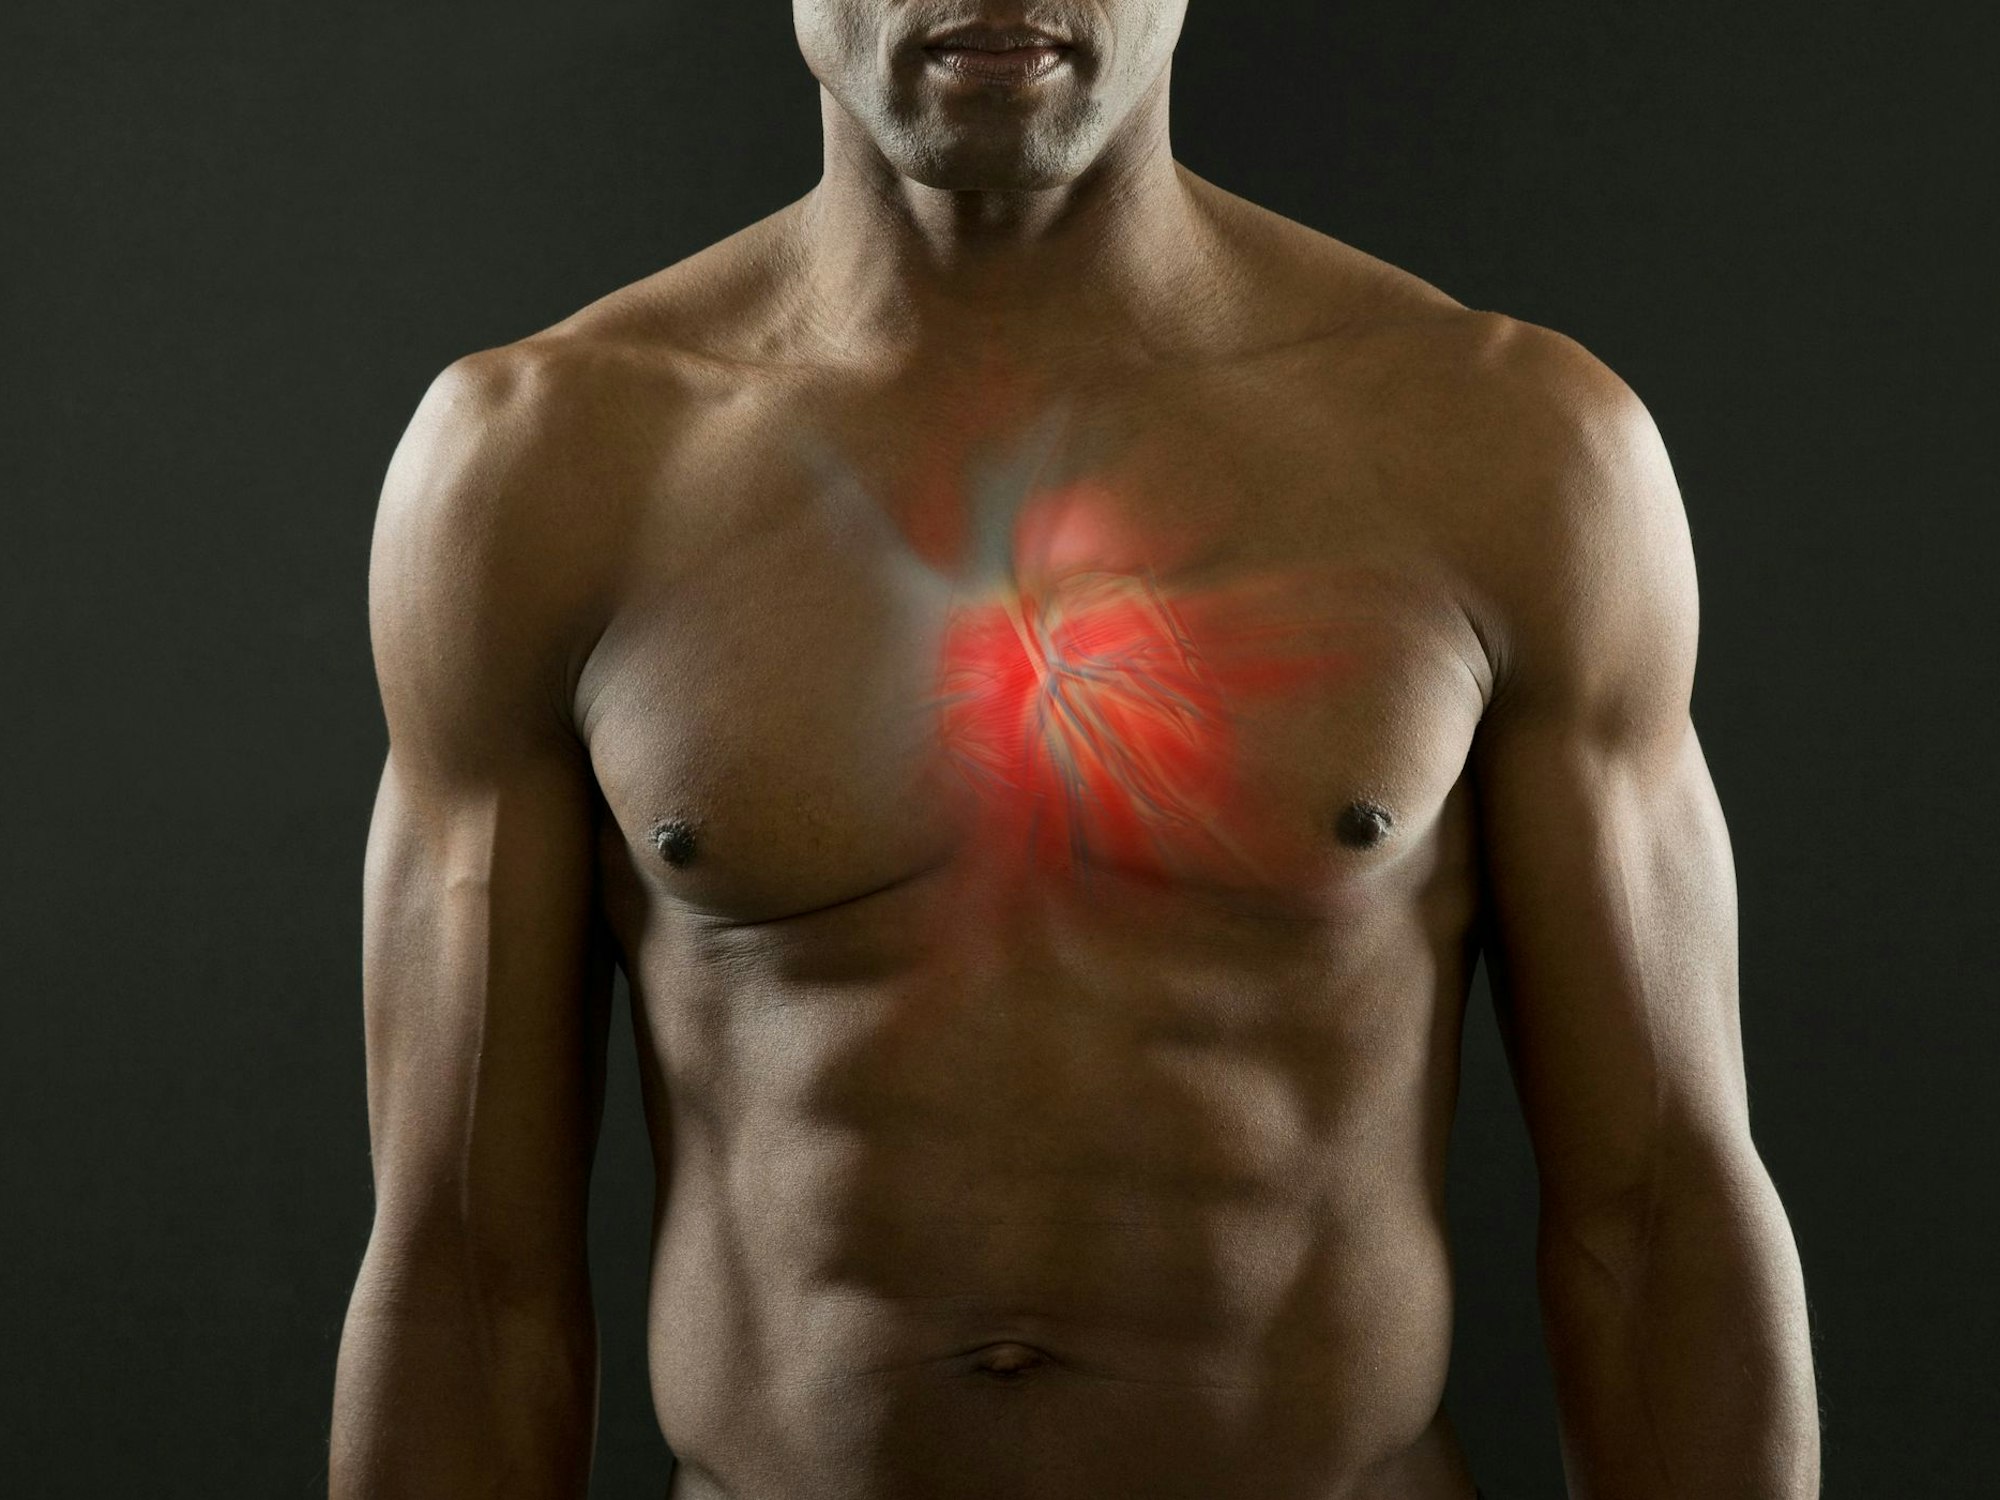 Darstellung von Herz und Blutgefäßen in der Brust eines Mannes